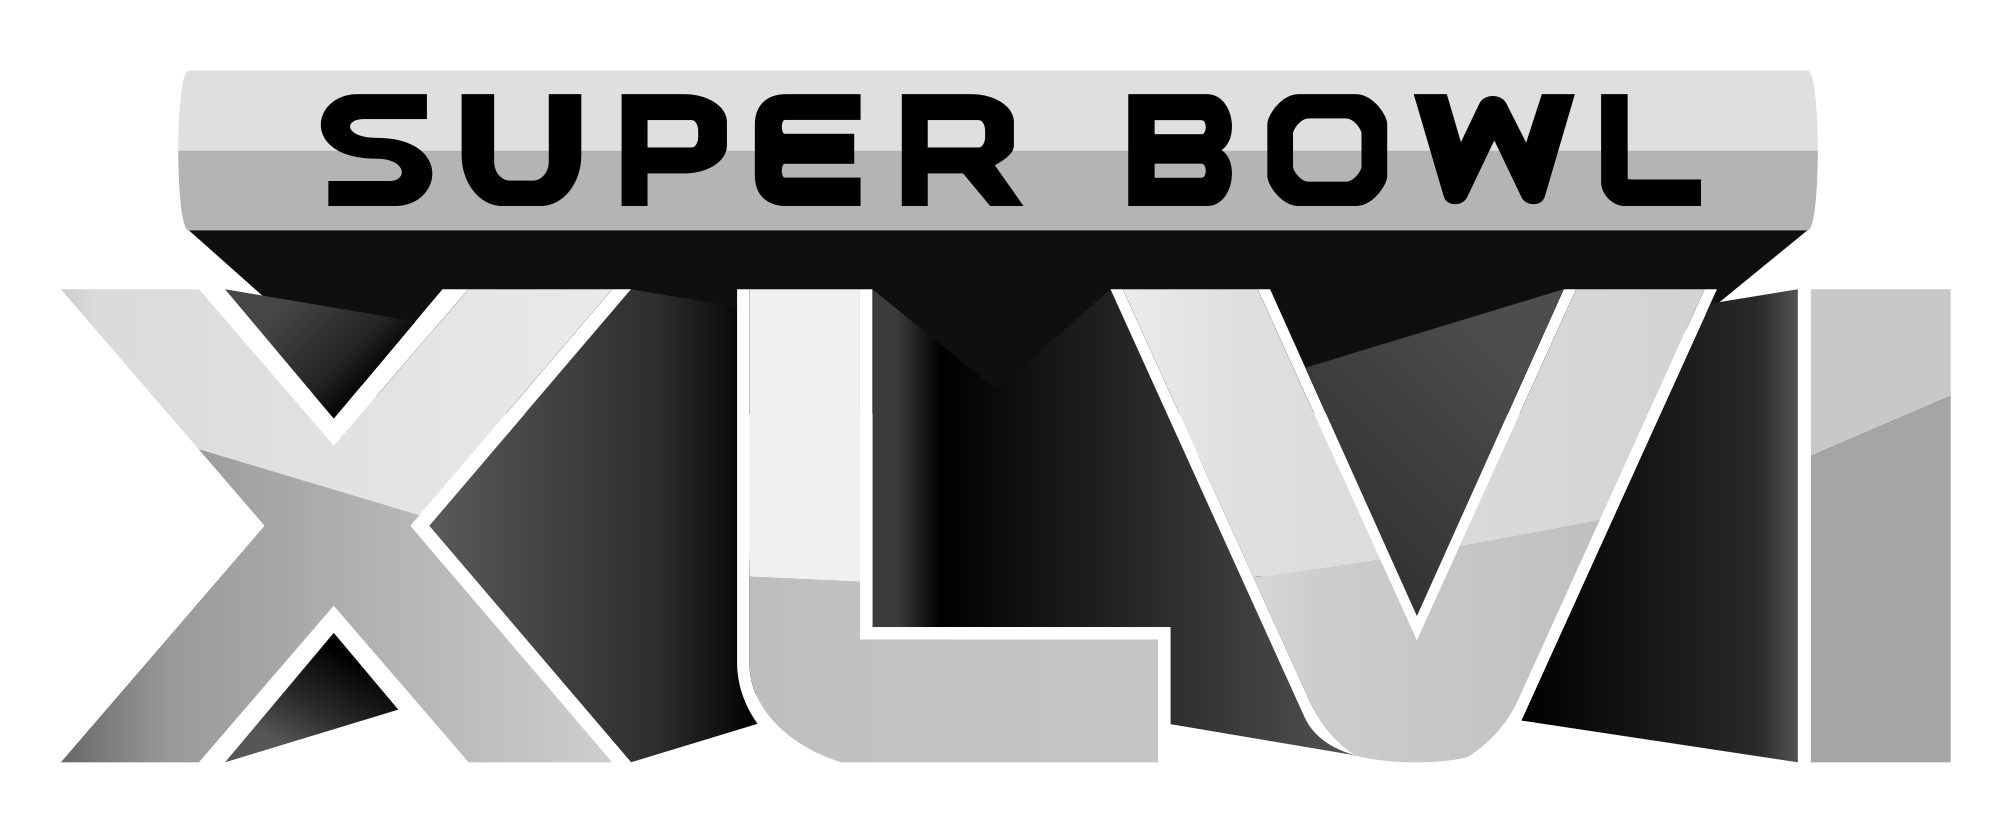 Open Hdpng.com  - Super Bowl, Transparent background PNG HD thumbnail